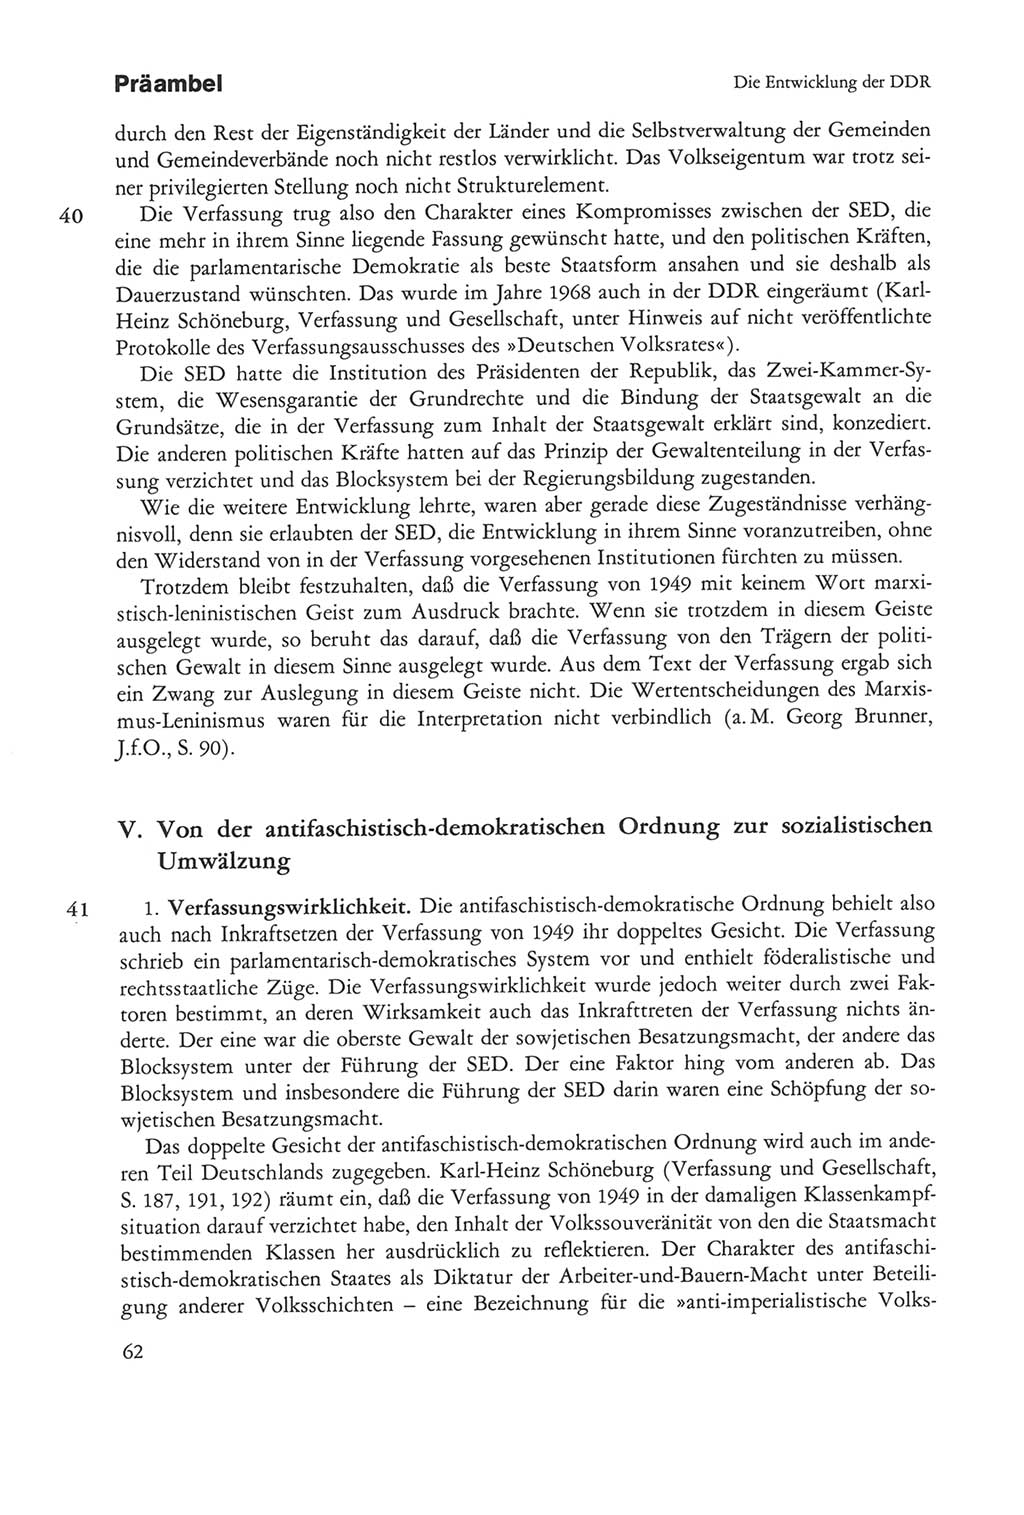 Die sozialistische Verfassung der Deutschen Demokratischen Republik (DDR), Kommentar 1982, Seite 62 (Soz. Verf. DDR Komm. 1982, S. 62)